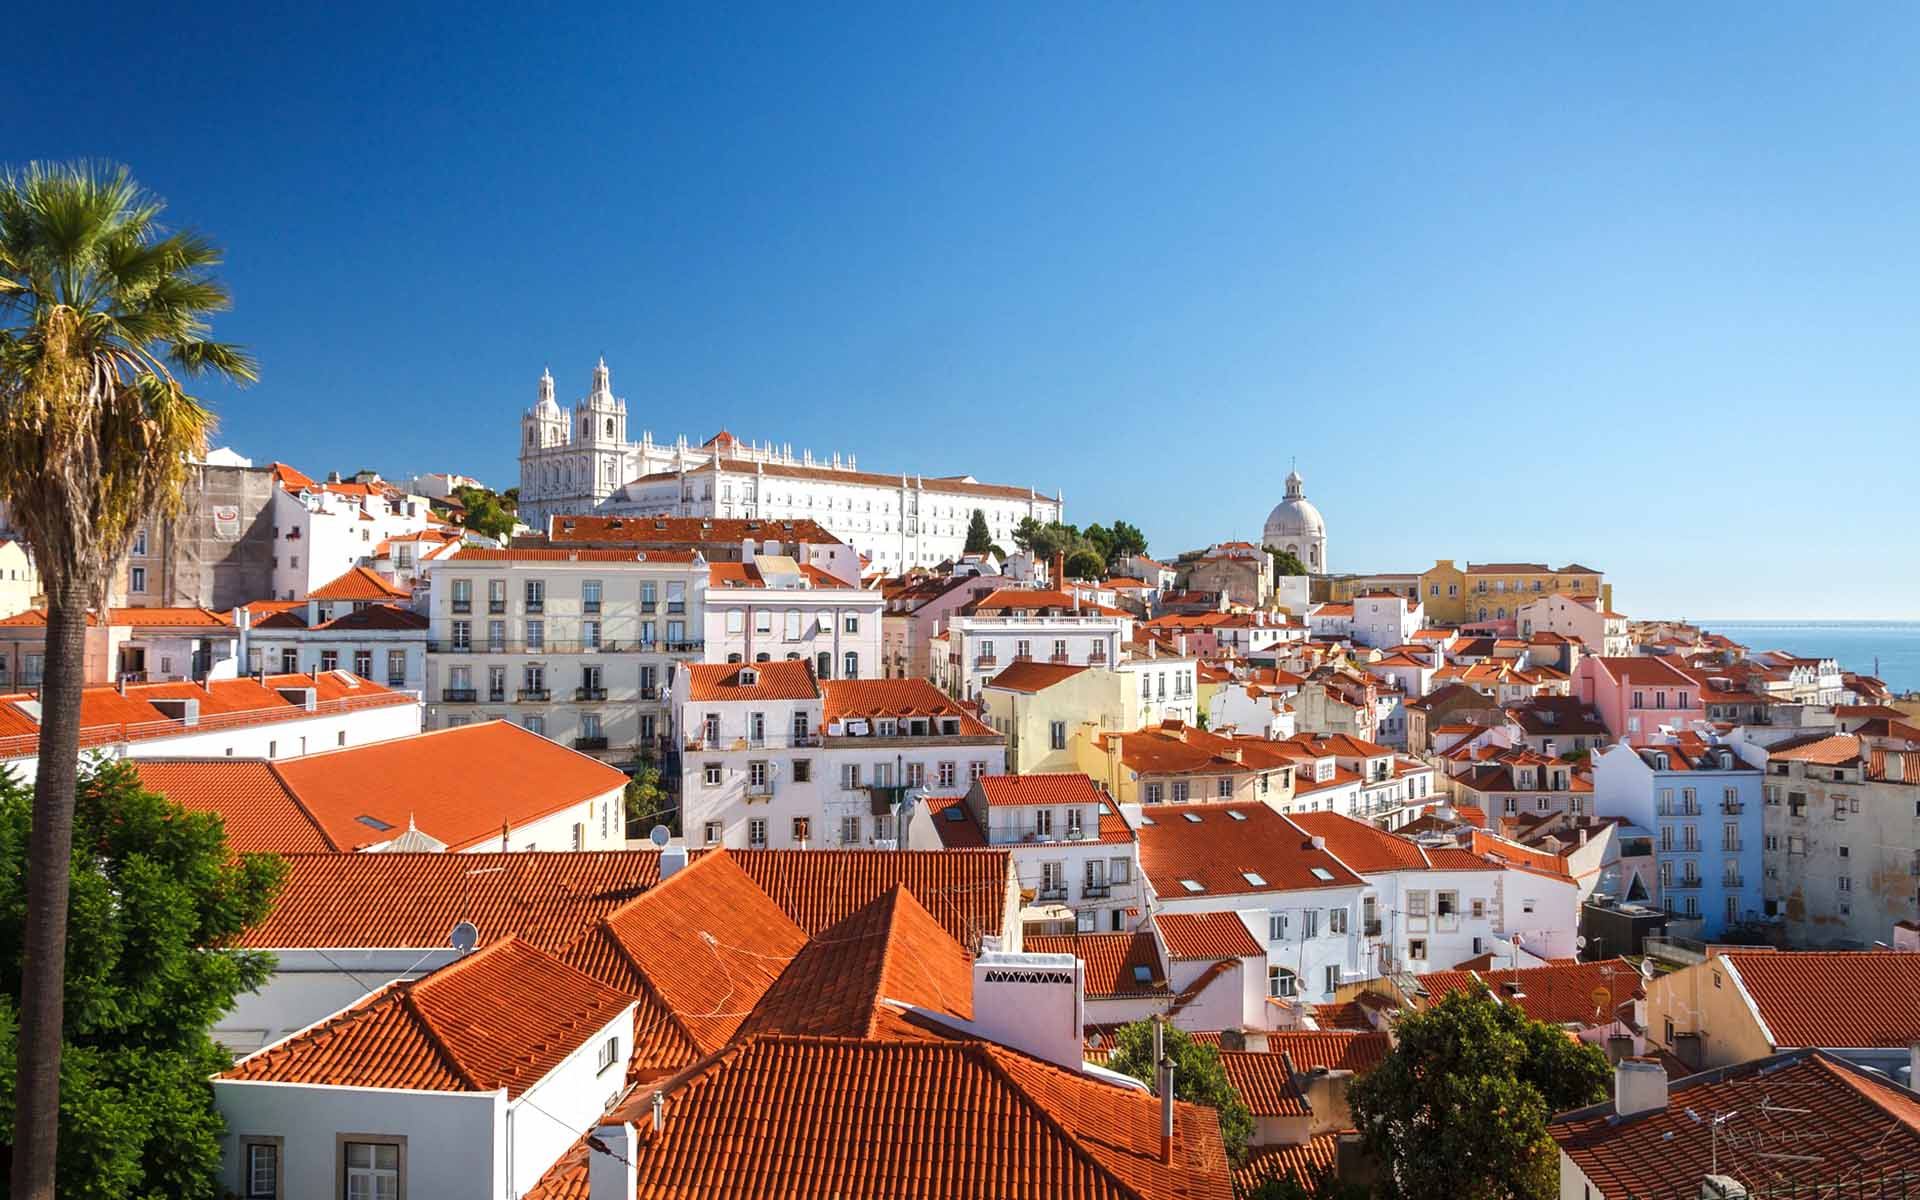 Bild von Häuserdächern in Lissabon.